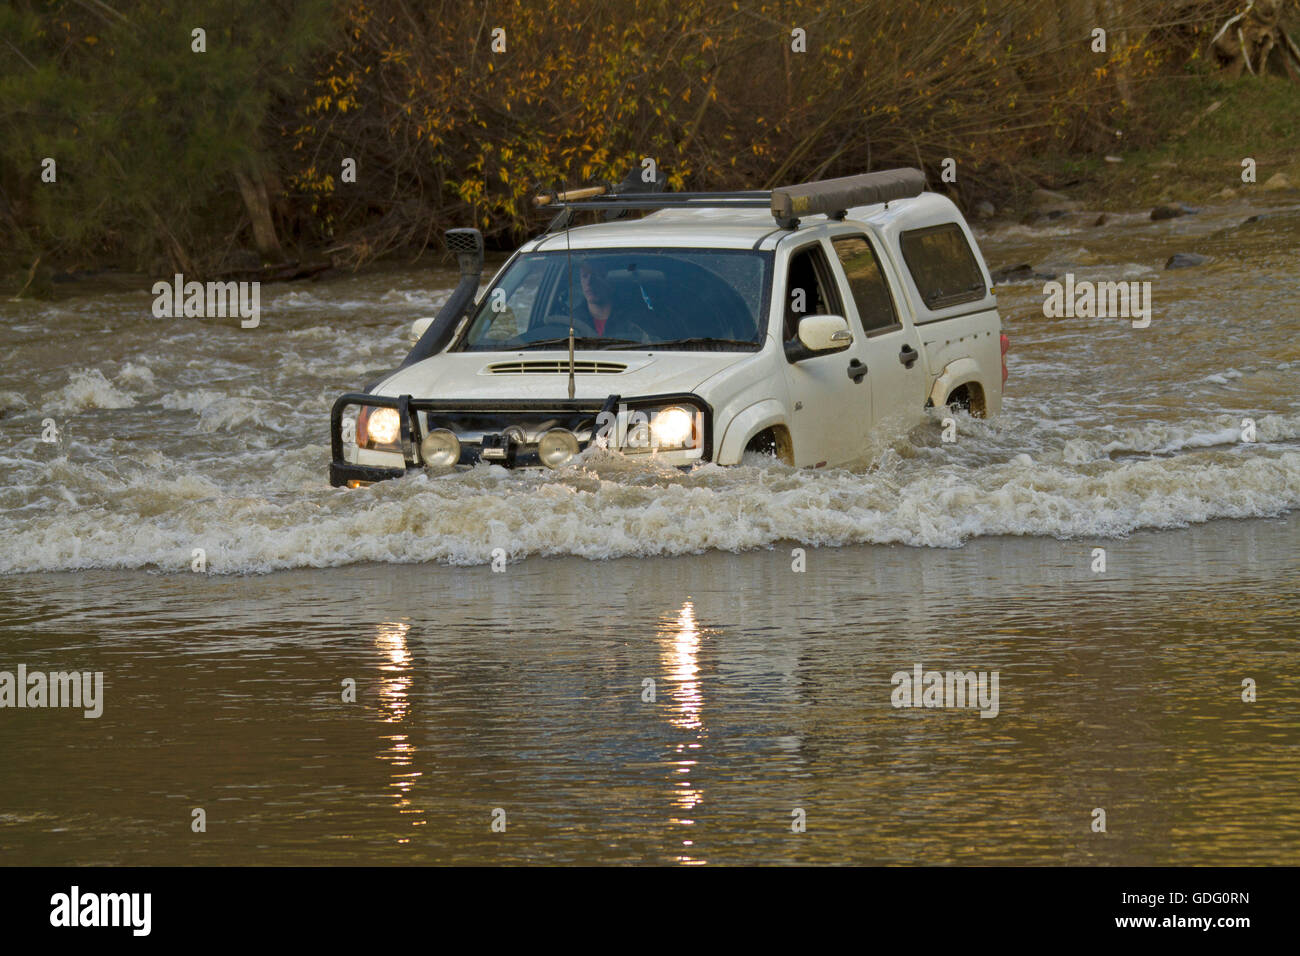 Allrad Fahrzeug mit Bugwelle weißen angeschnittene Ärmel Wasser machen gefährliche Überquerung der überfluteten Fluss in New South Wales zu schaffen. Australien Stockfoto